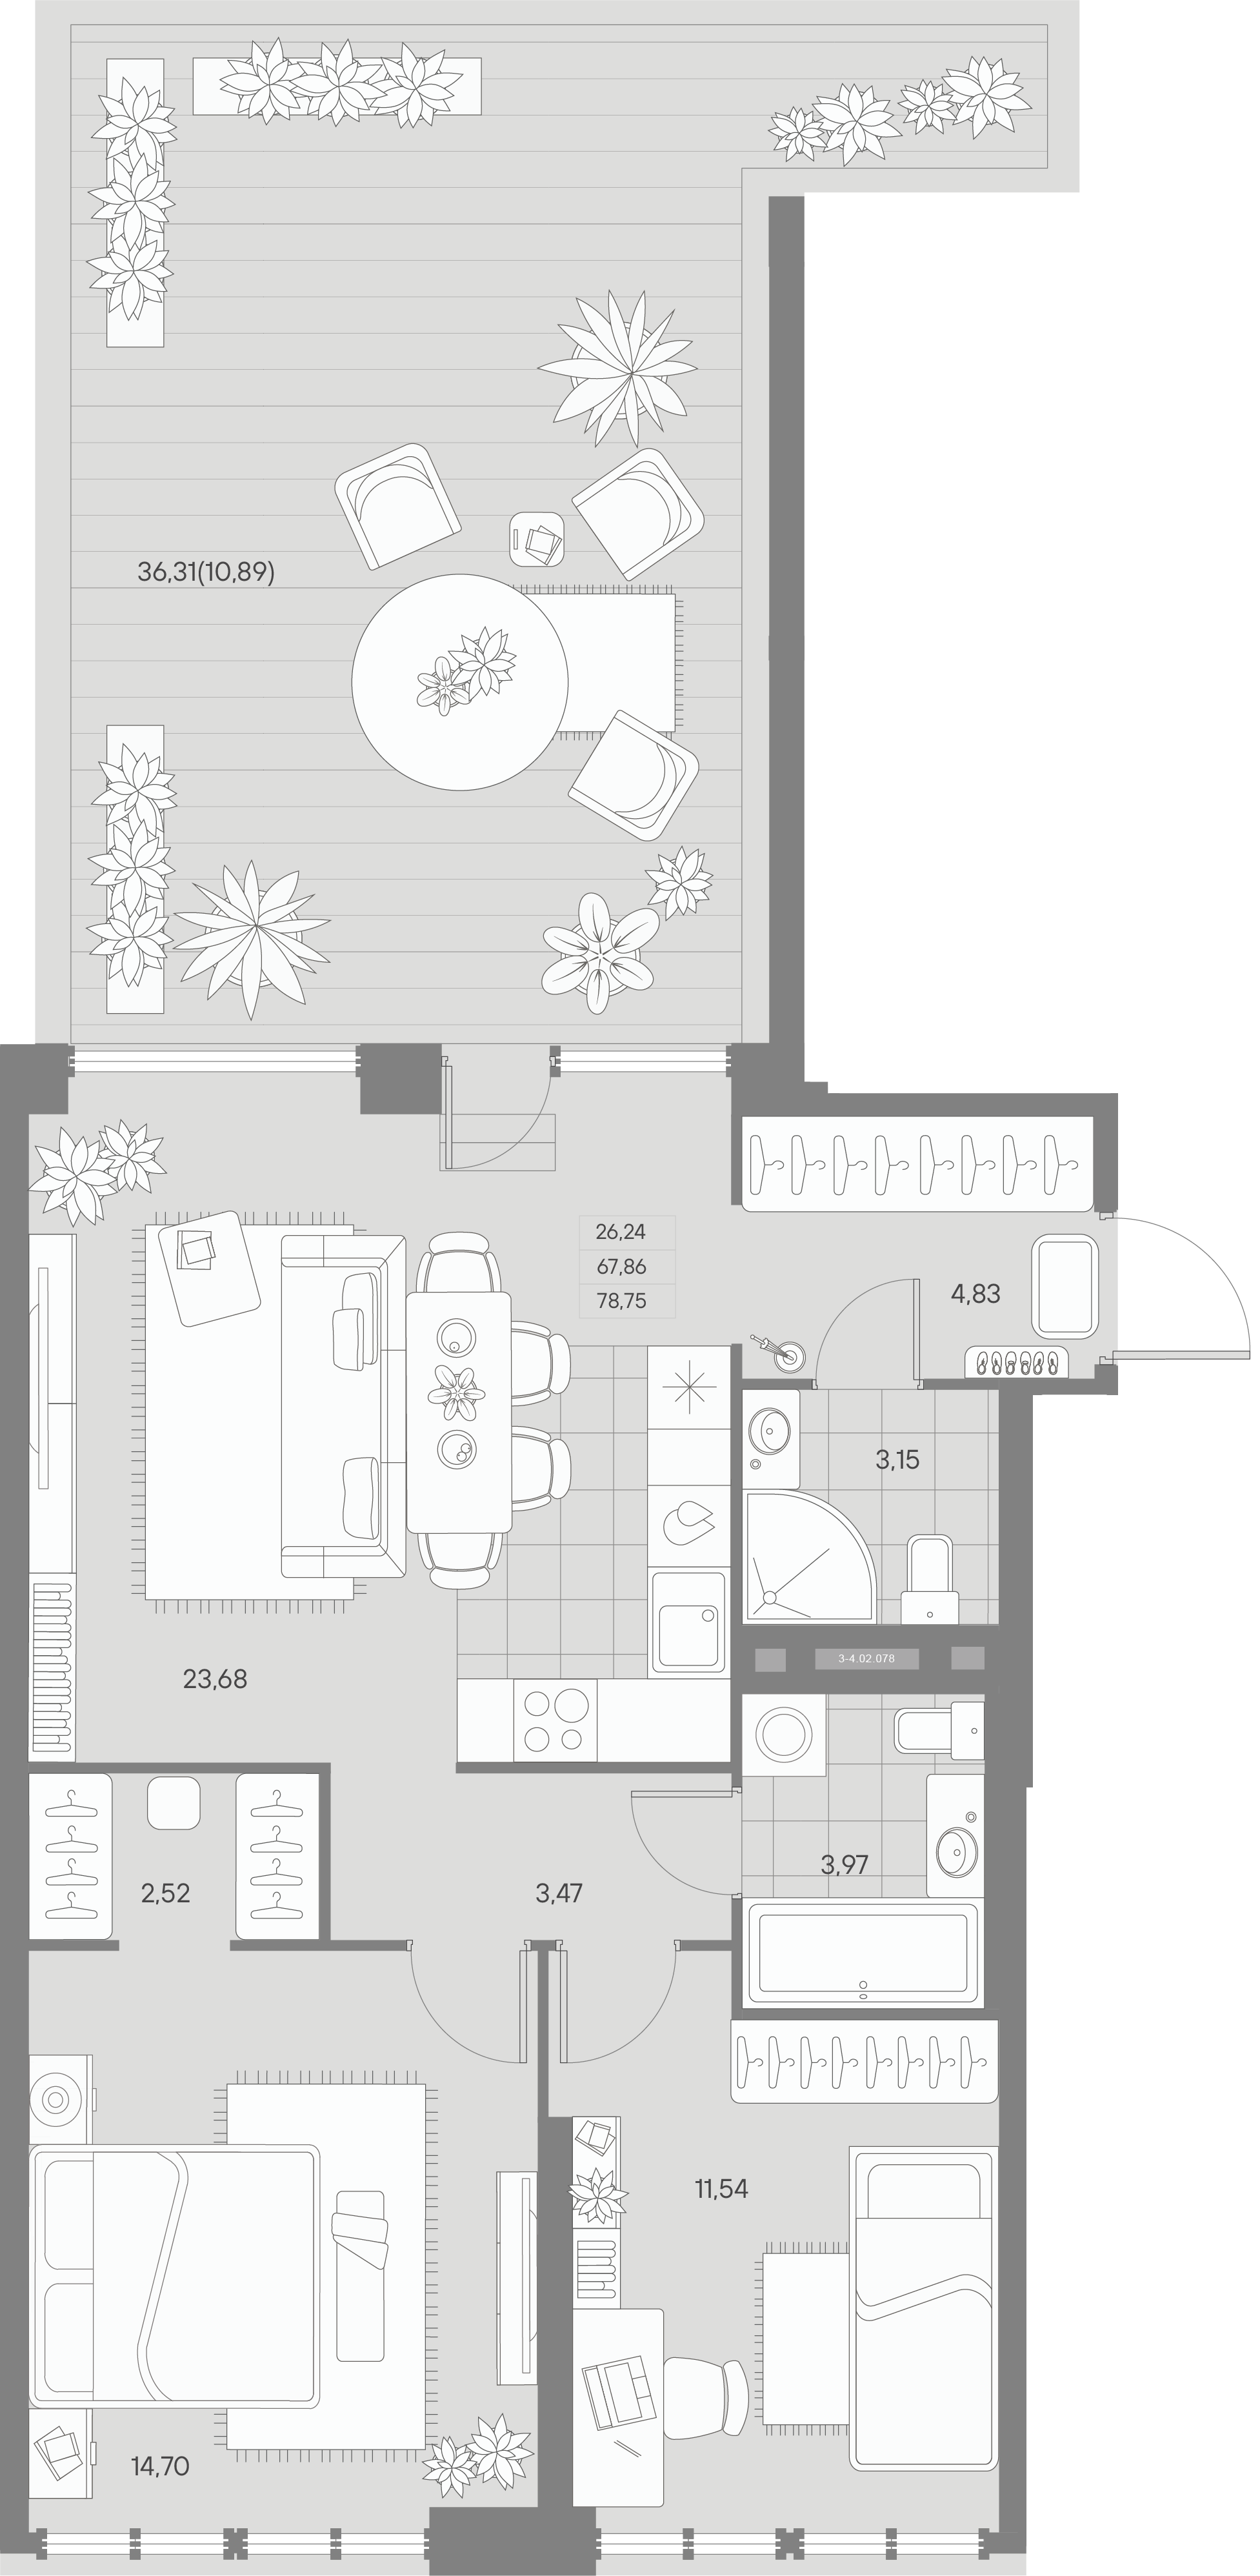 2-комнатная квартира  №78 в Avant: 78.75 м², этаж 2 - купить в Санкт-Петербурге